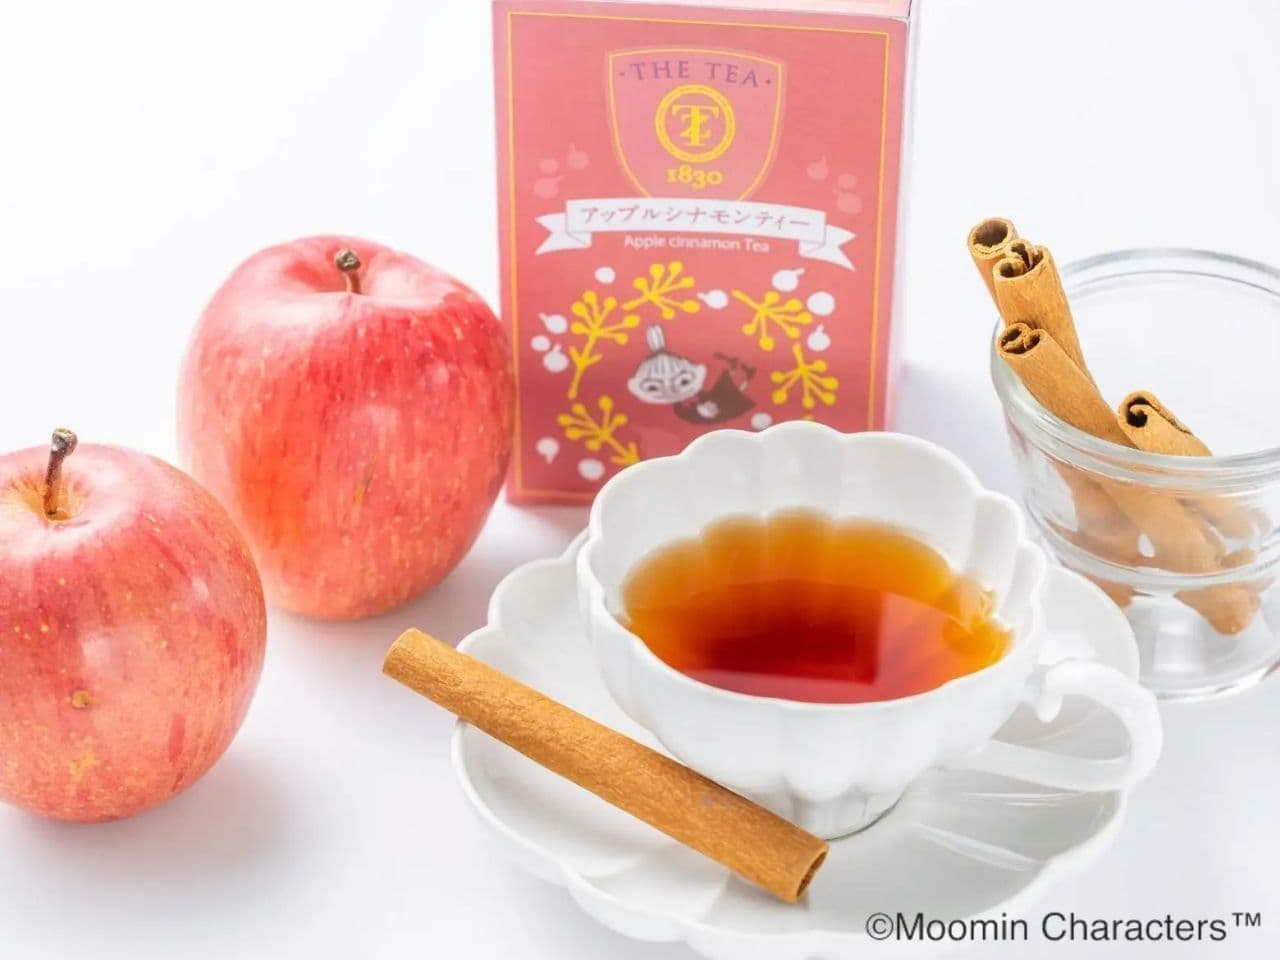 Moomin Flavor Tea "Apple Cinnamon Tea